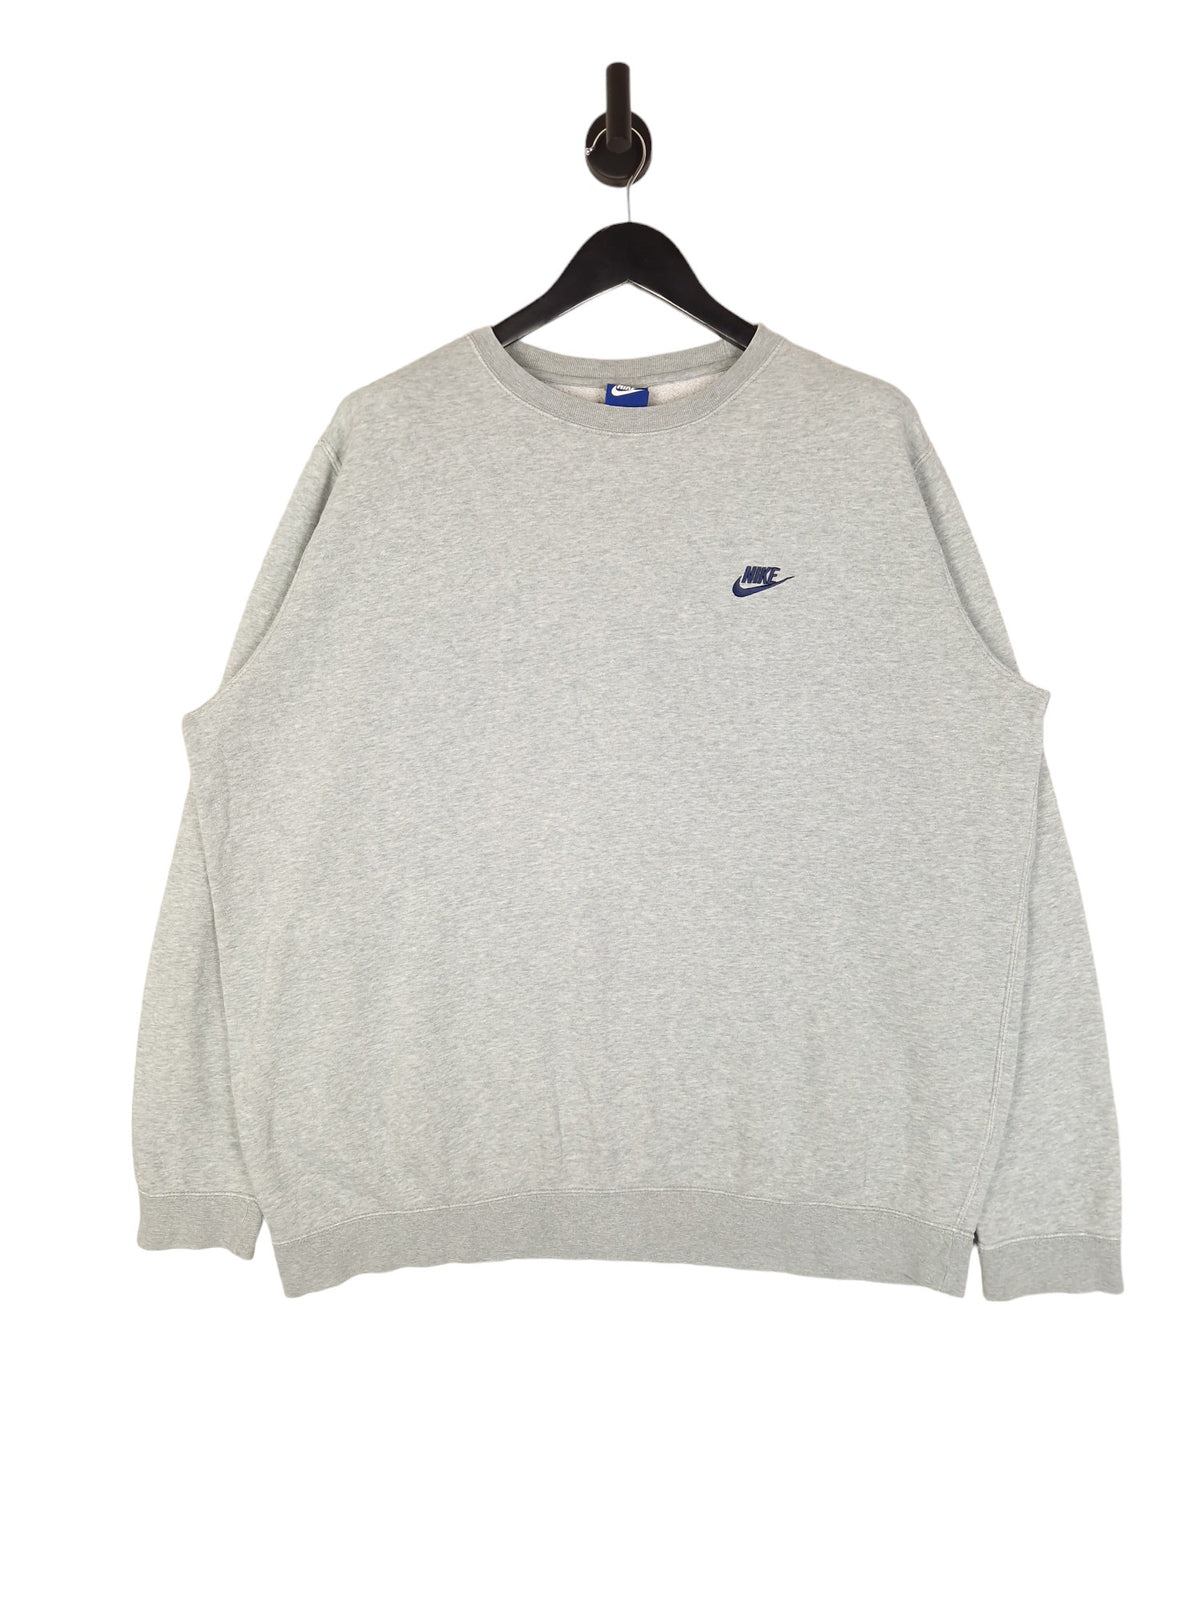 Nike Small Logo Sweatshirt - Size XXL